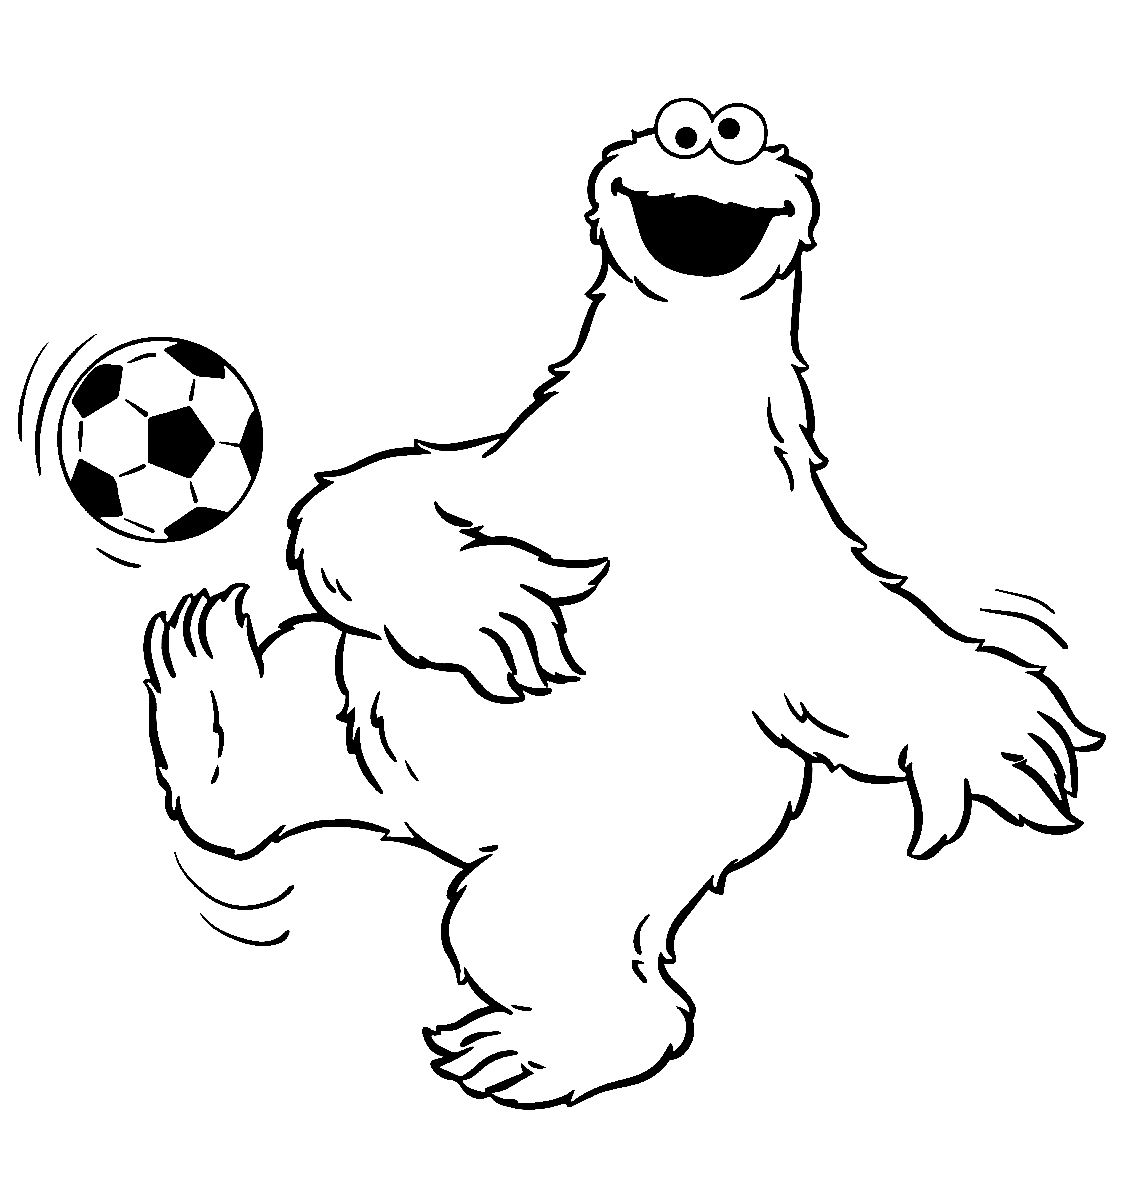 Cookie Monster играет в футбол из футбола